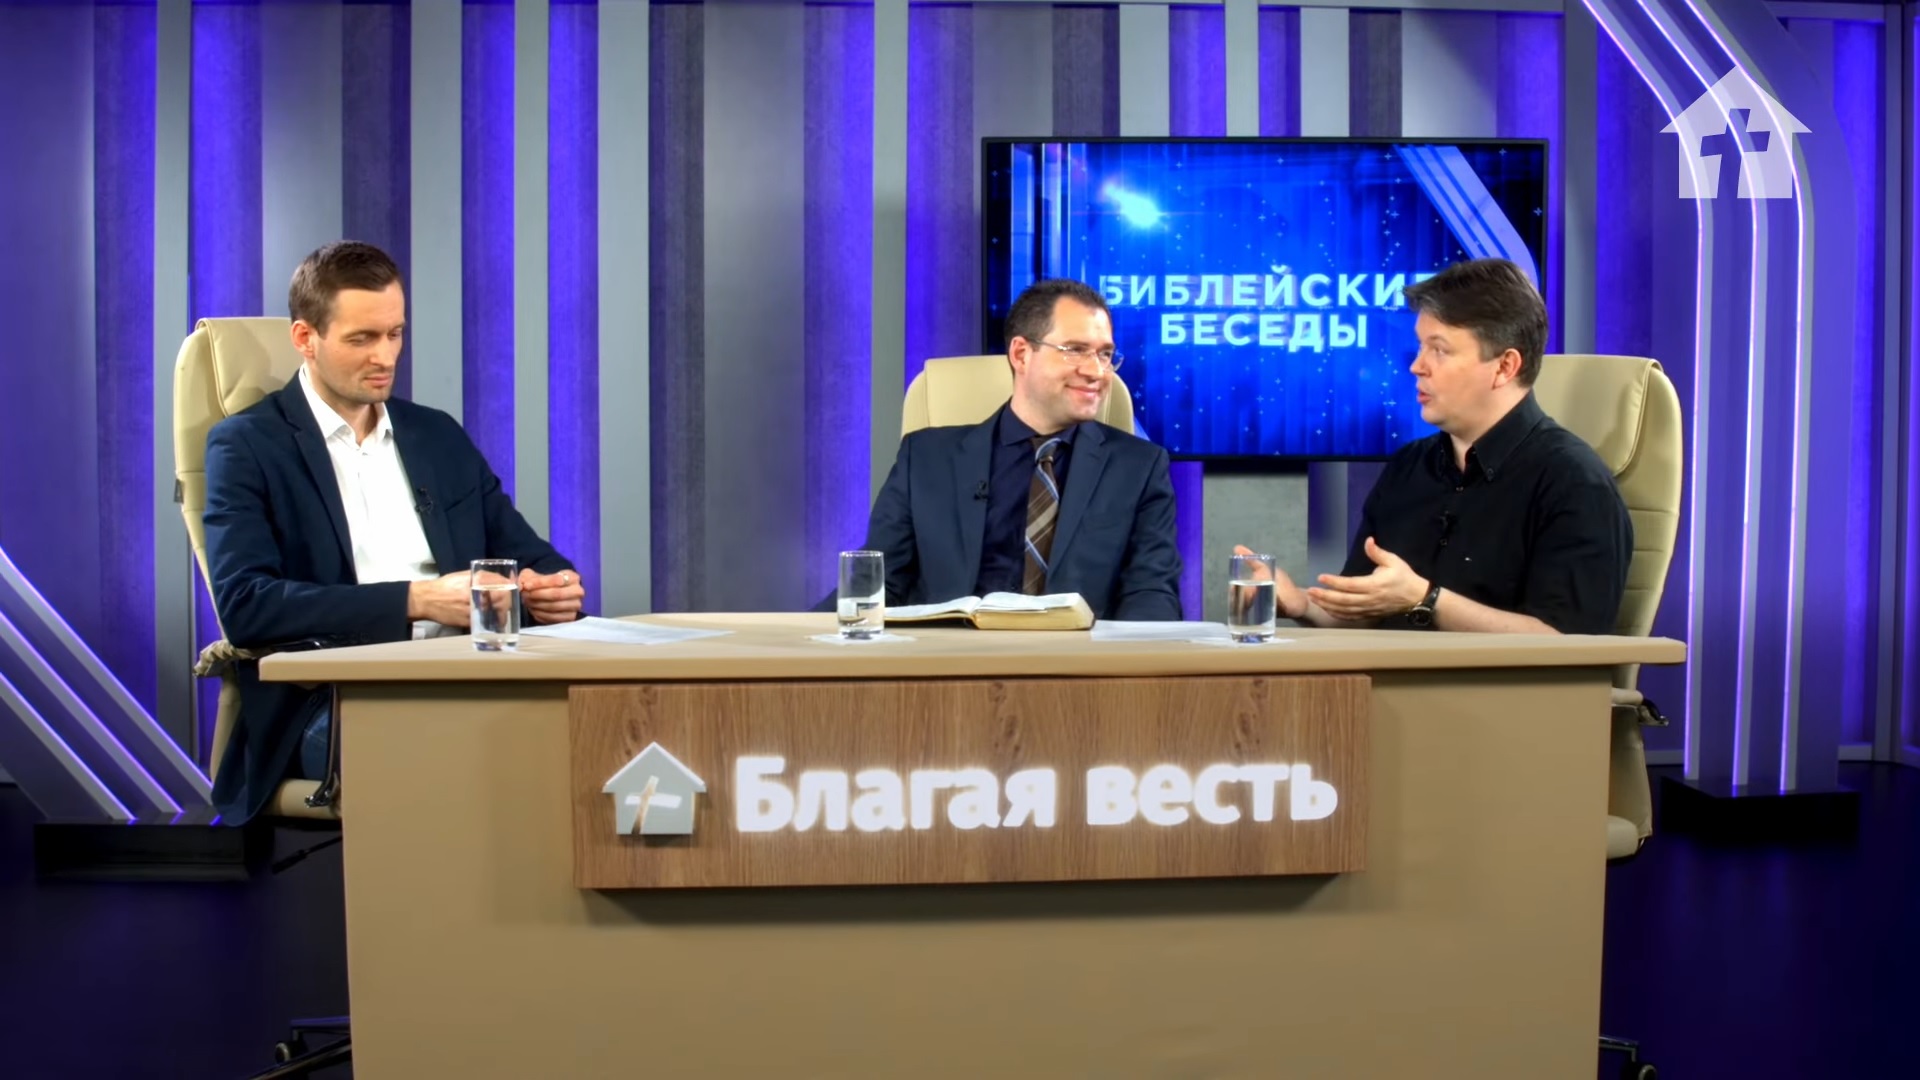 Телеканал «Благая весть» получил лицензию на вещание в РФ